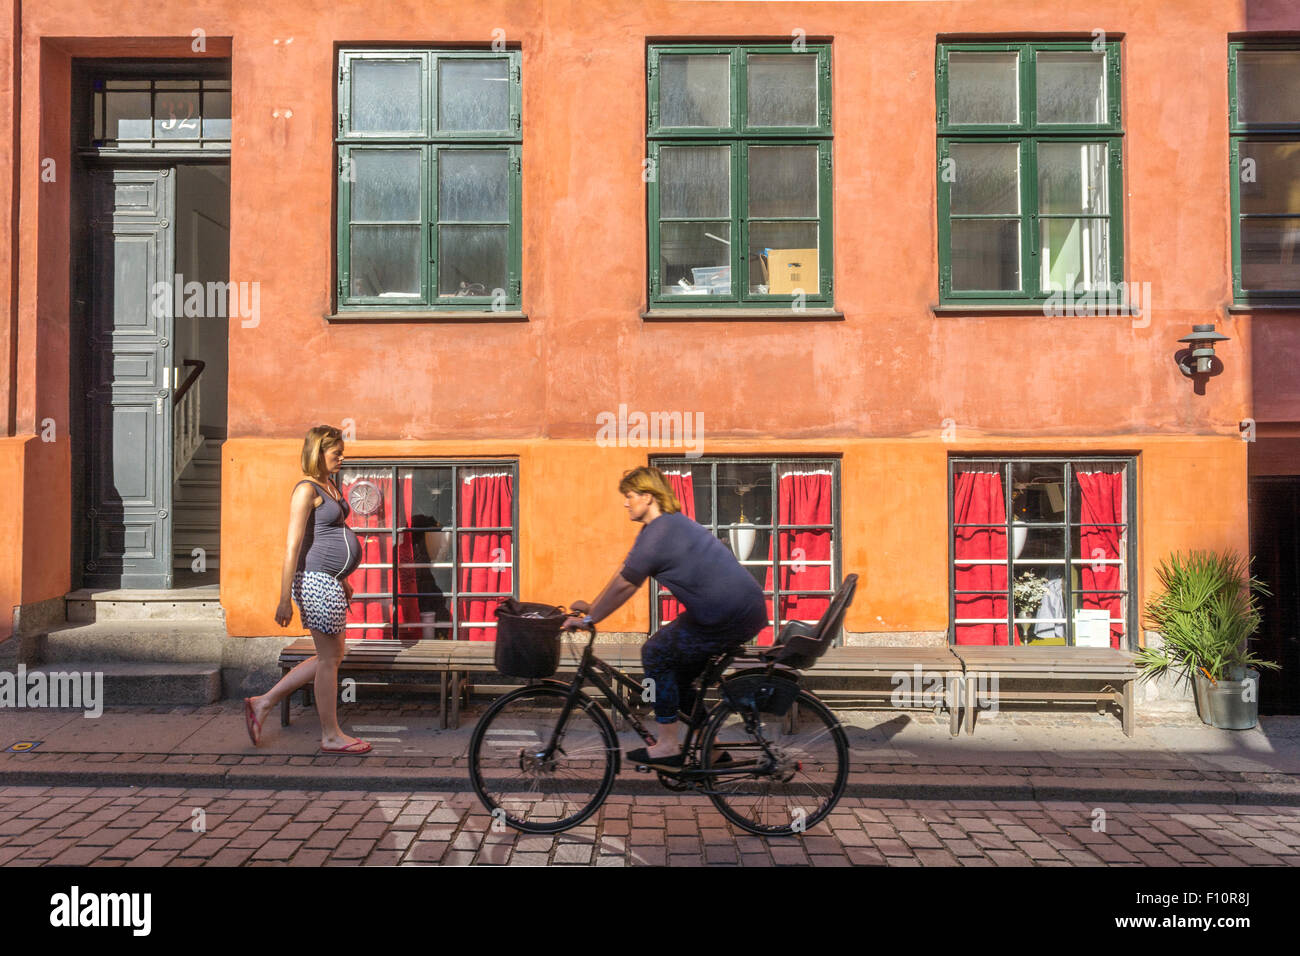 Una donna pesantemente incinta cammina lungo una colorata strada acciottolata a Copenaghen in Danimarca Foto Stock